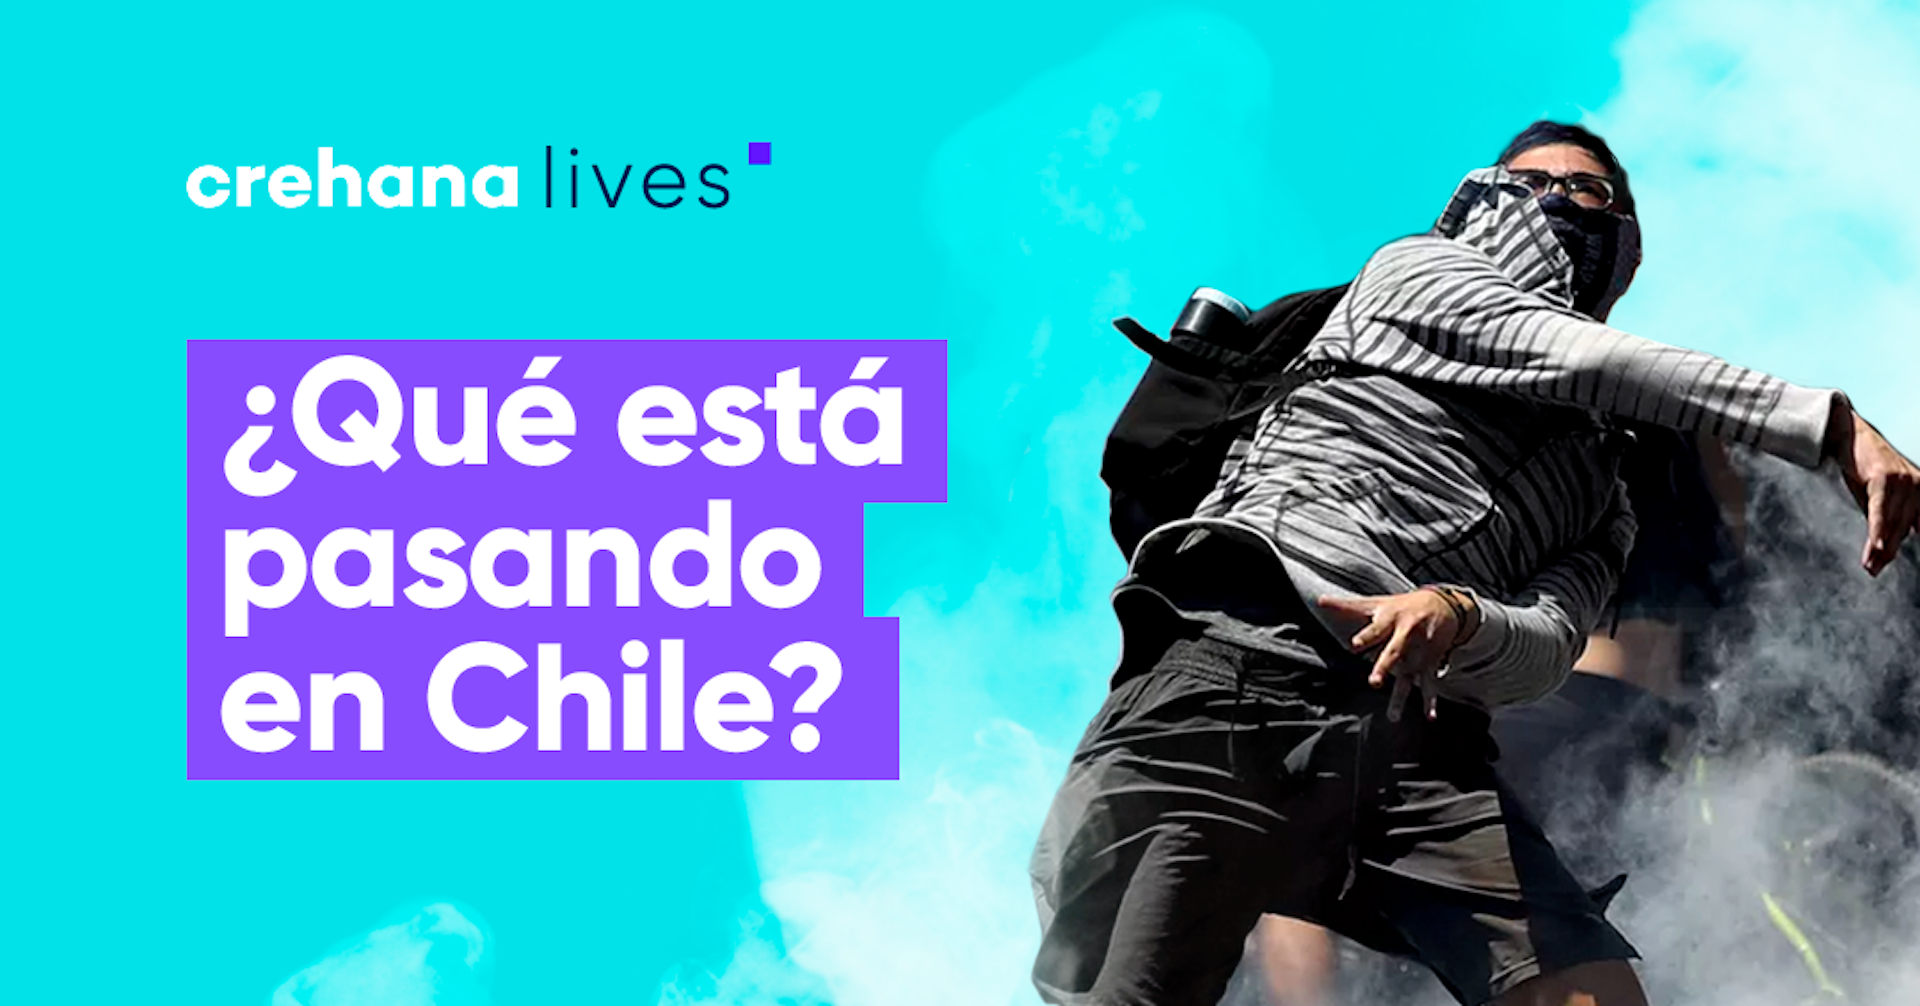 Revive el Crehana Live: ¿Qué está pasando en Chile?